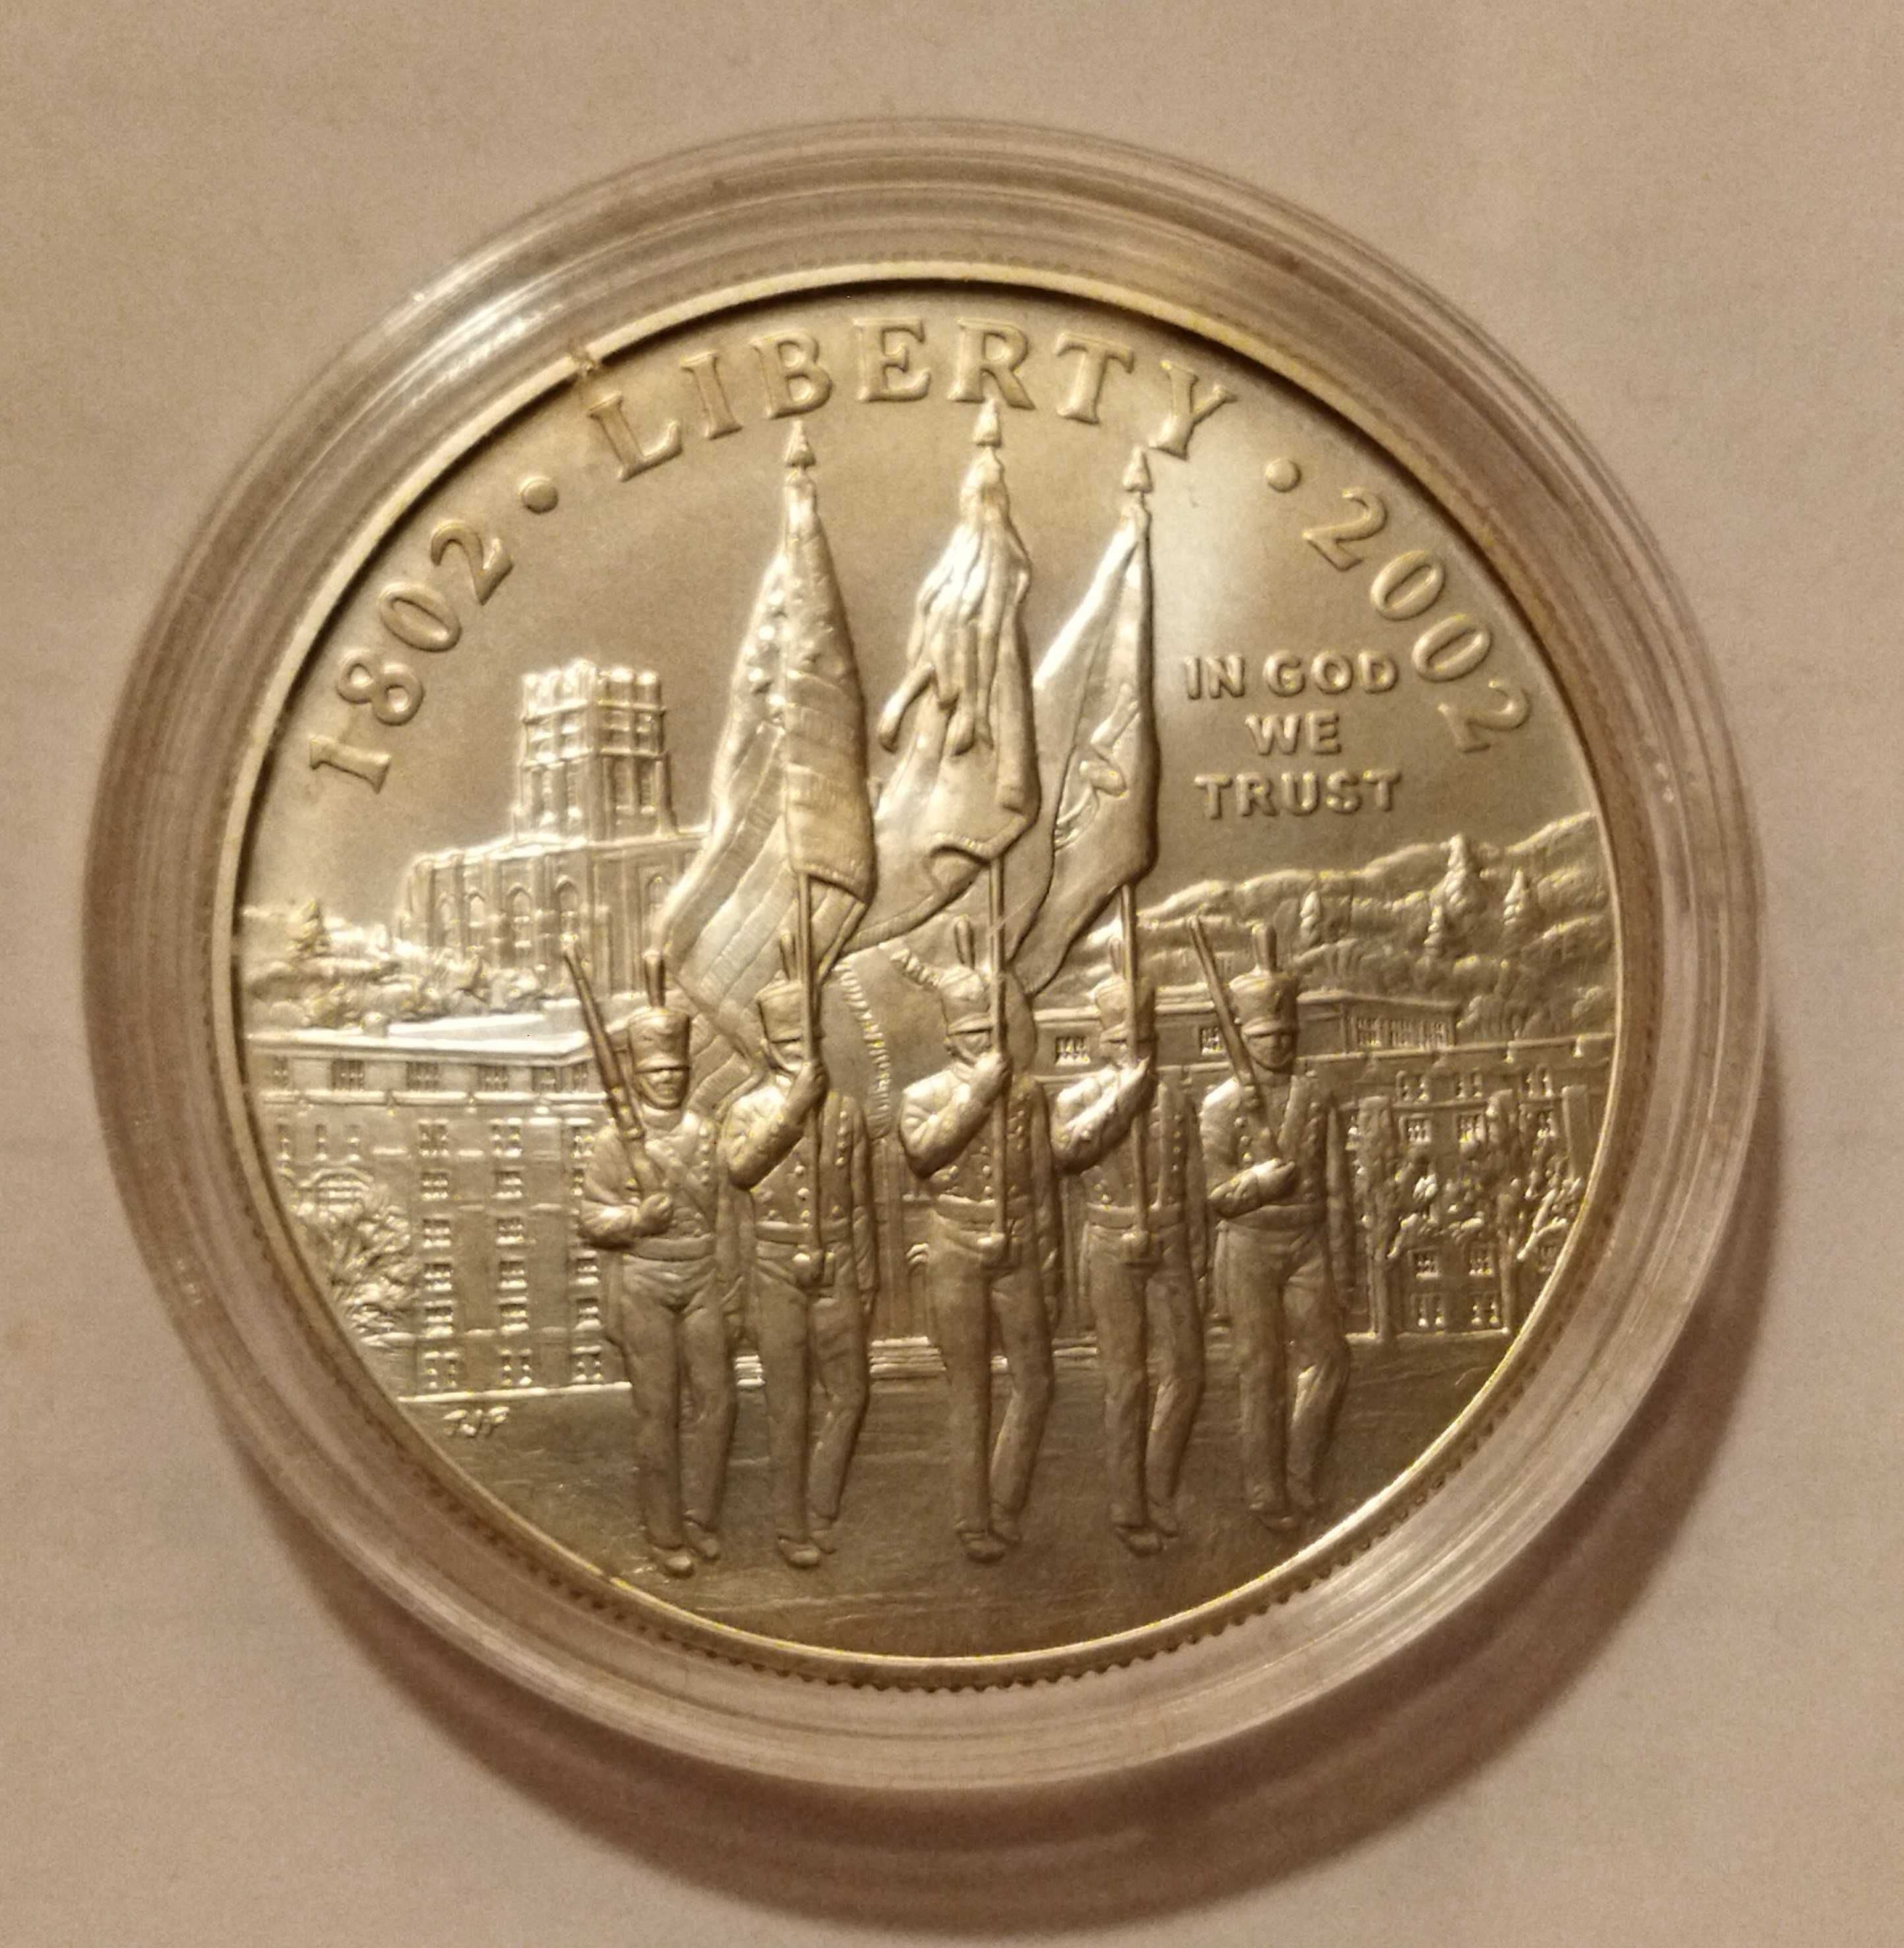 Srebrna moneta kolekcjonerska 1 dolar 2002 r. USA (West Point)